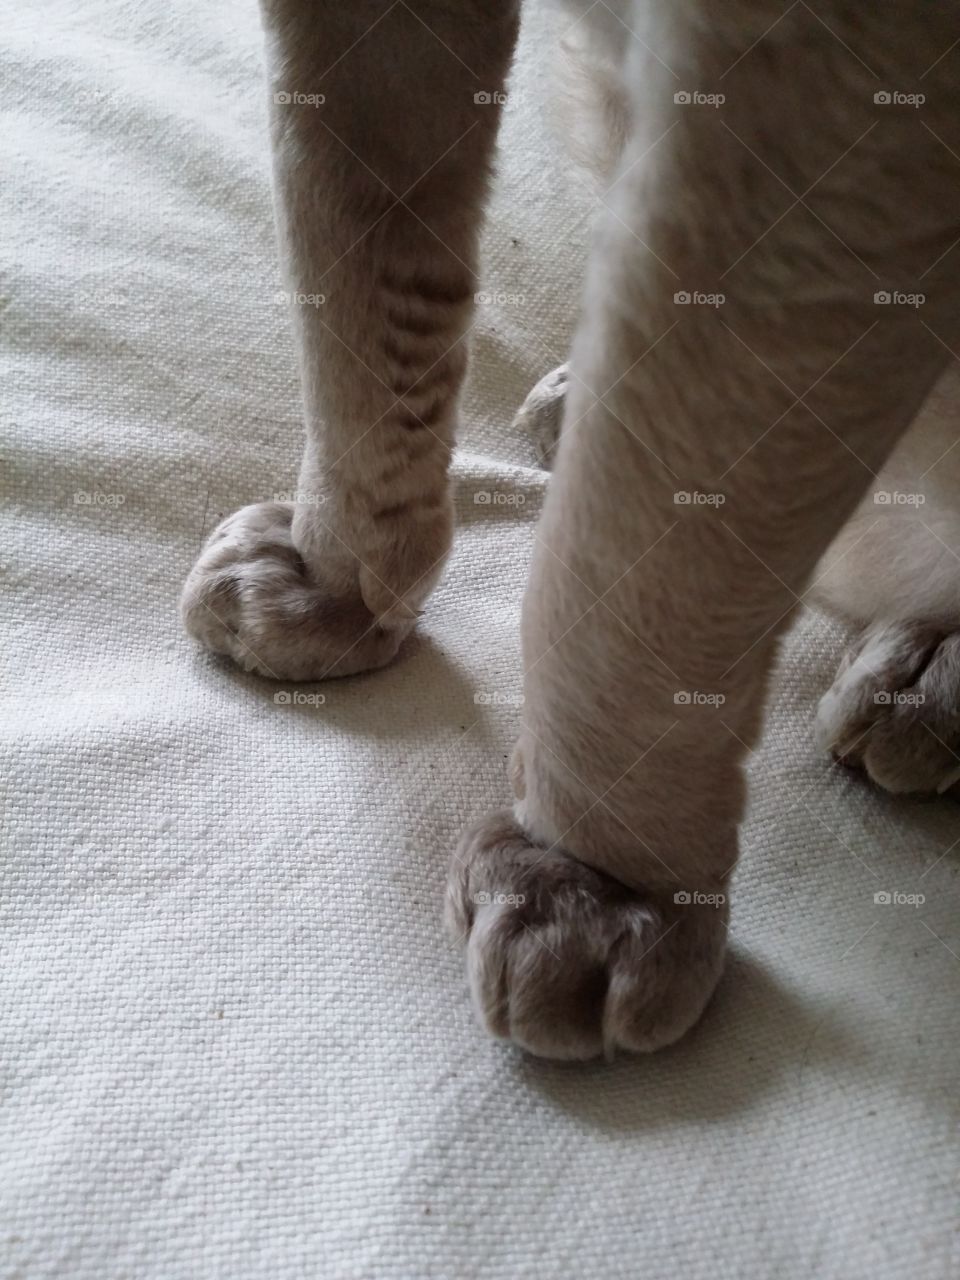 Lovely cat's legs